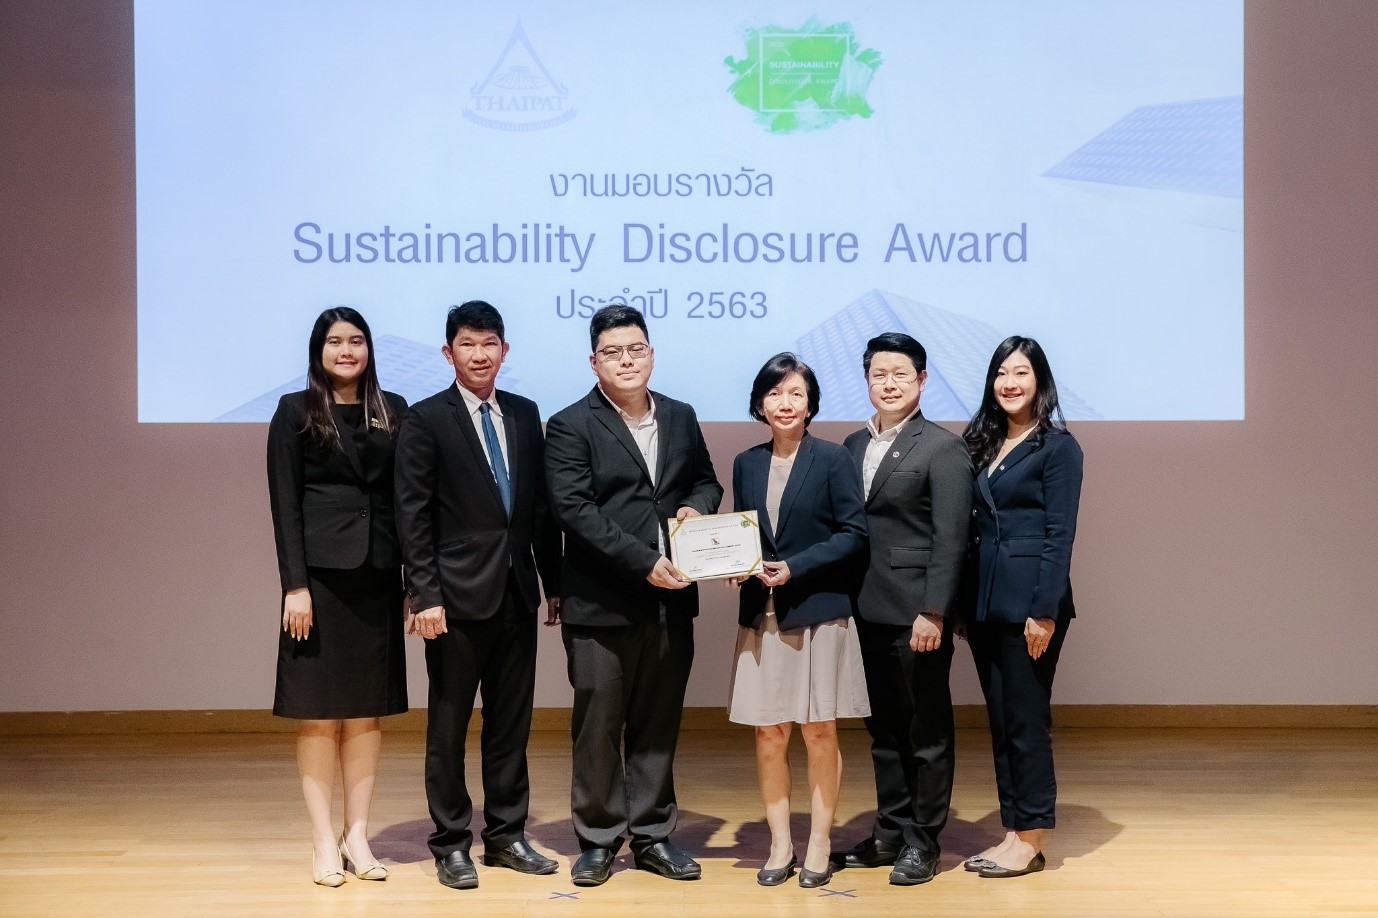 บริษัทรับรางวัลเกียรติคุณ หรือ Sustainability Disclosure Award ประจําปี 2563 จากสถาบันไทยพัฒน์